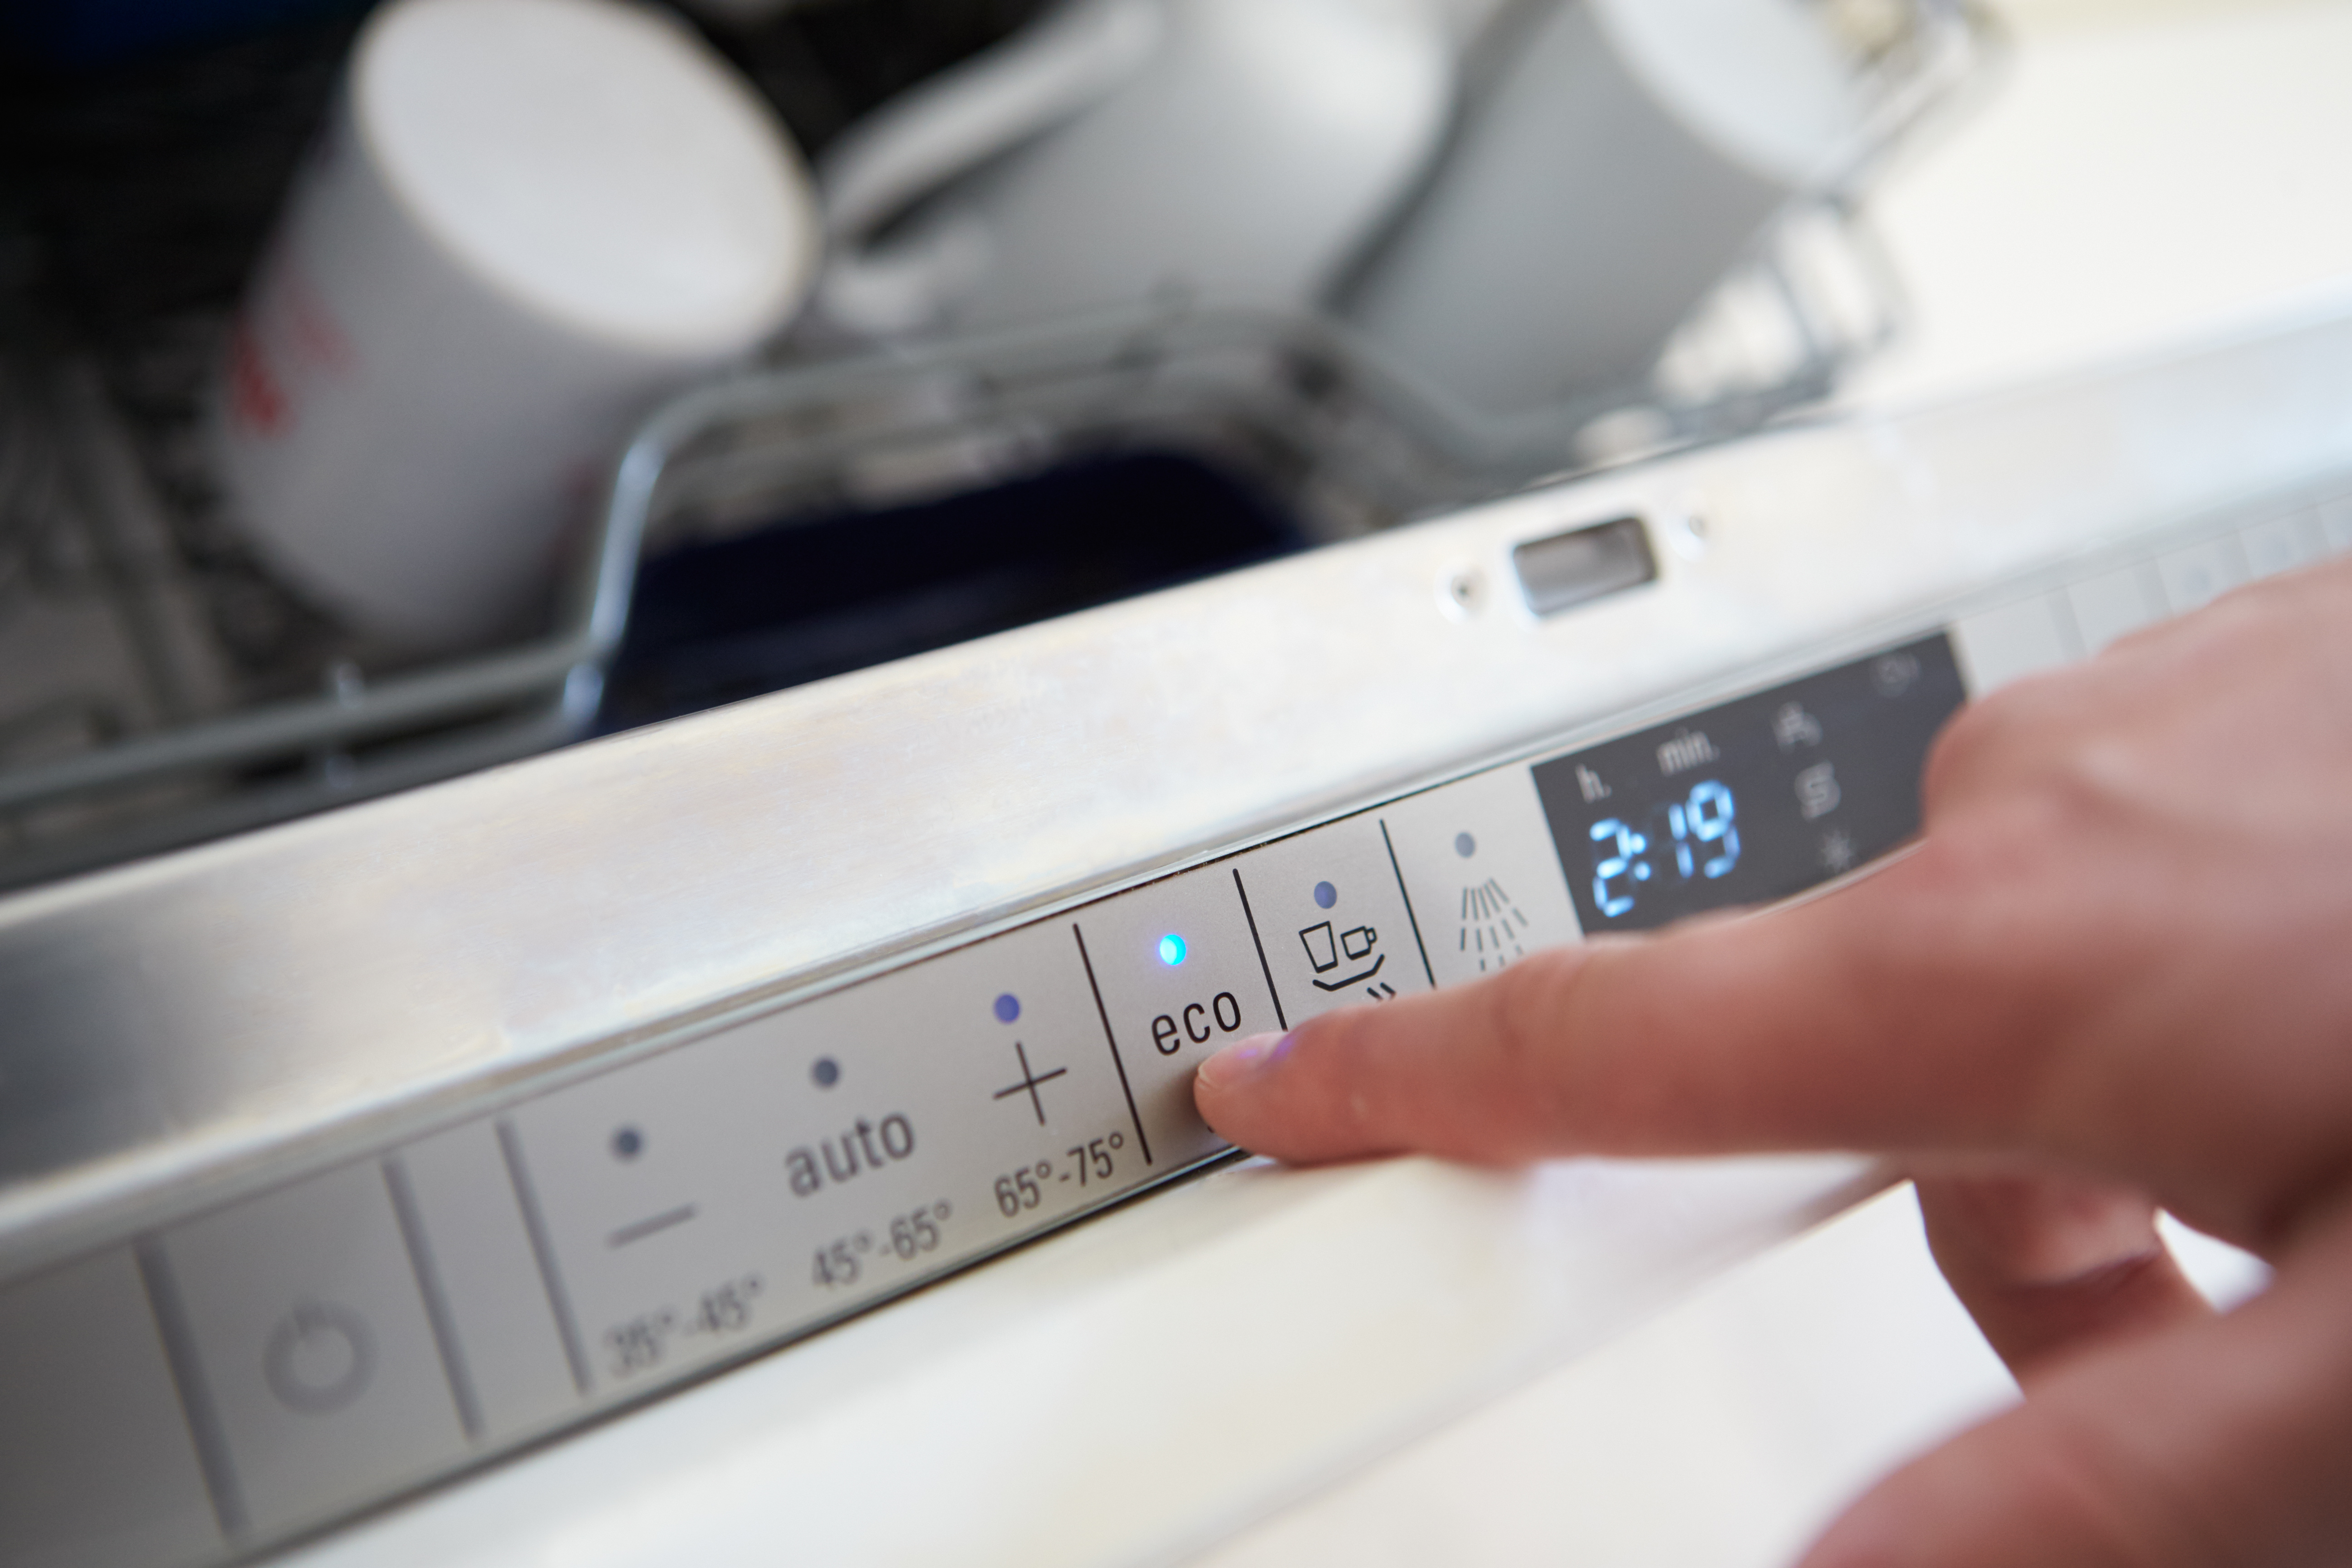 At afsløre anbefale ambulance Symbolerne på opvaskemaskinen - hvad betyder de egentlig?